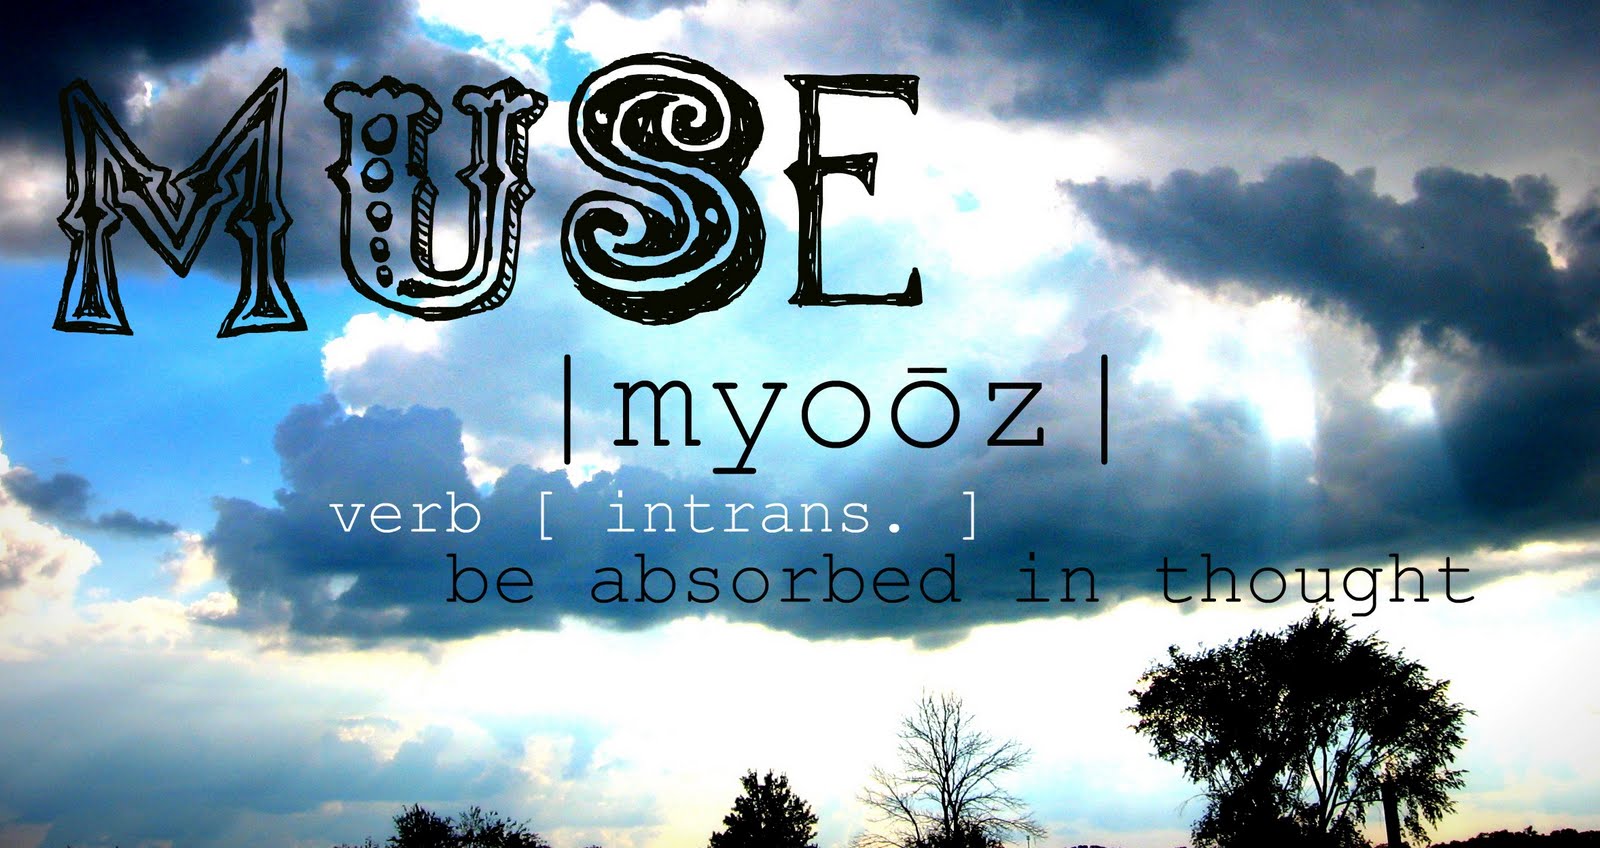 muse |myoōz|